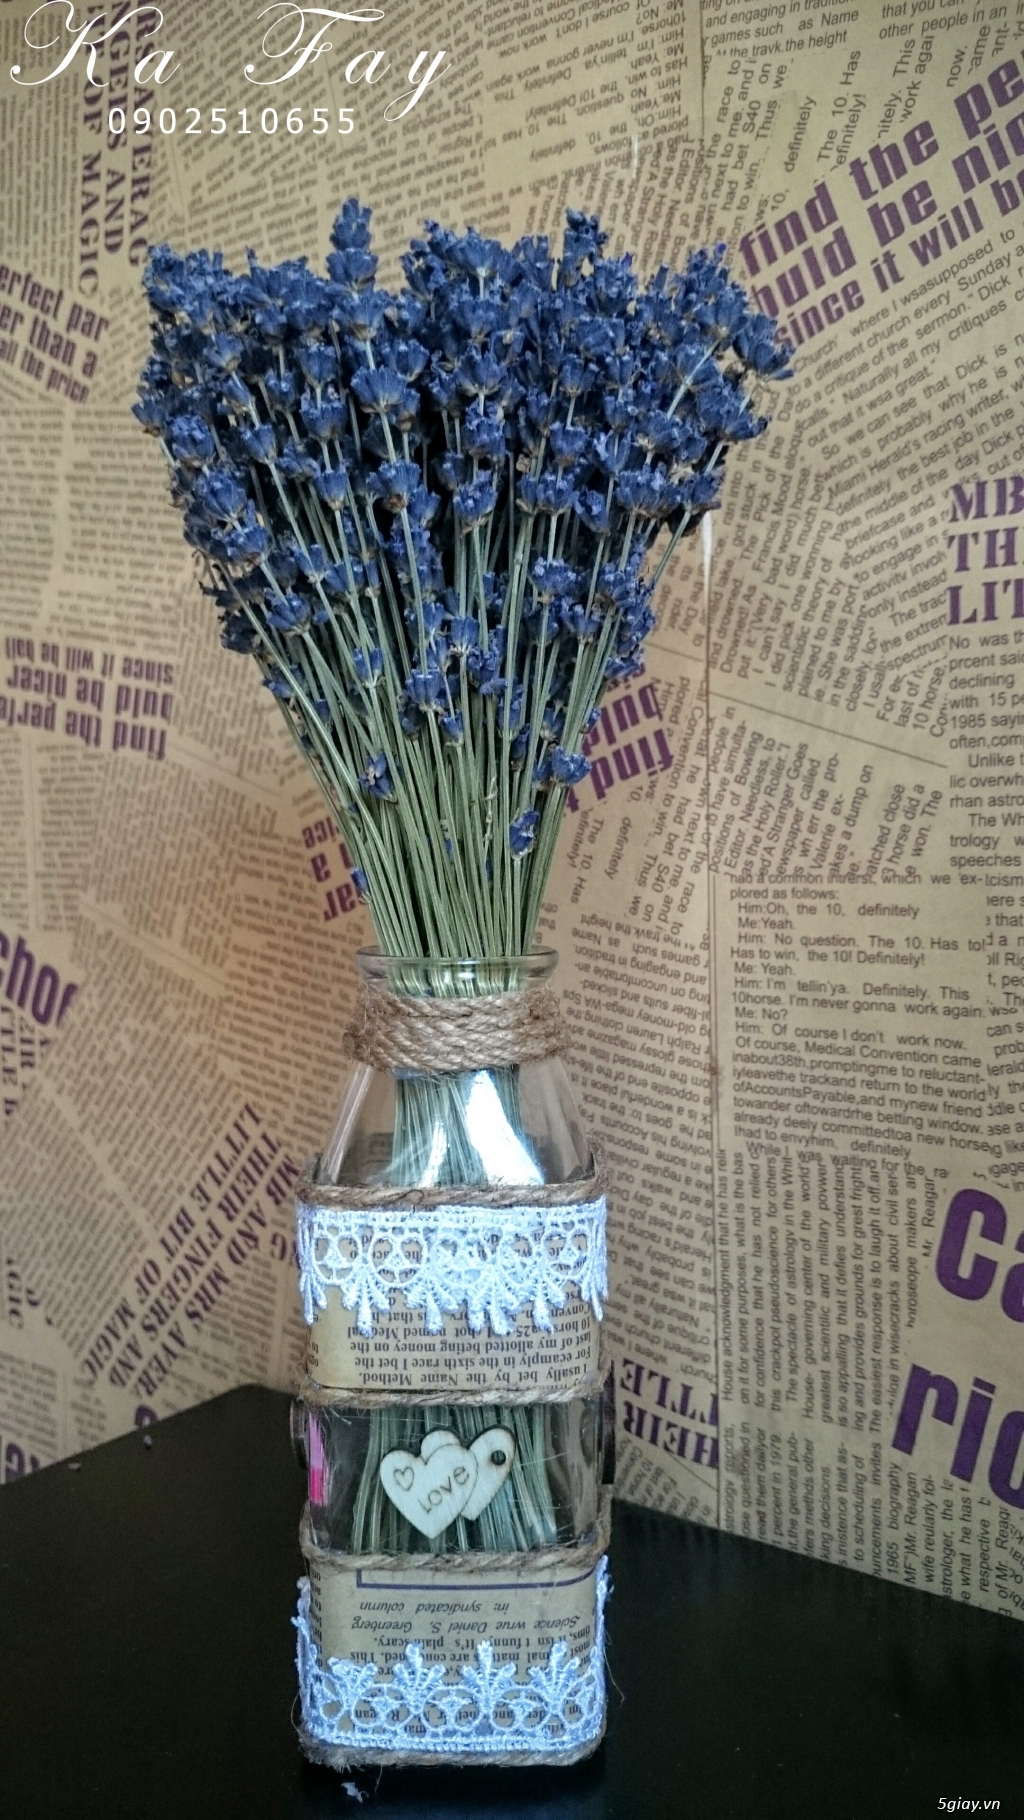 Hoa khô Lavender nhập khẩu từ pháp vs phụ kiện handmade - 6